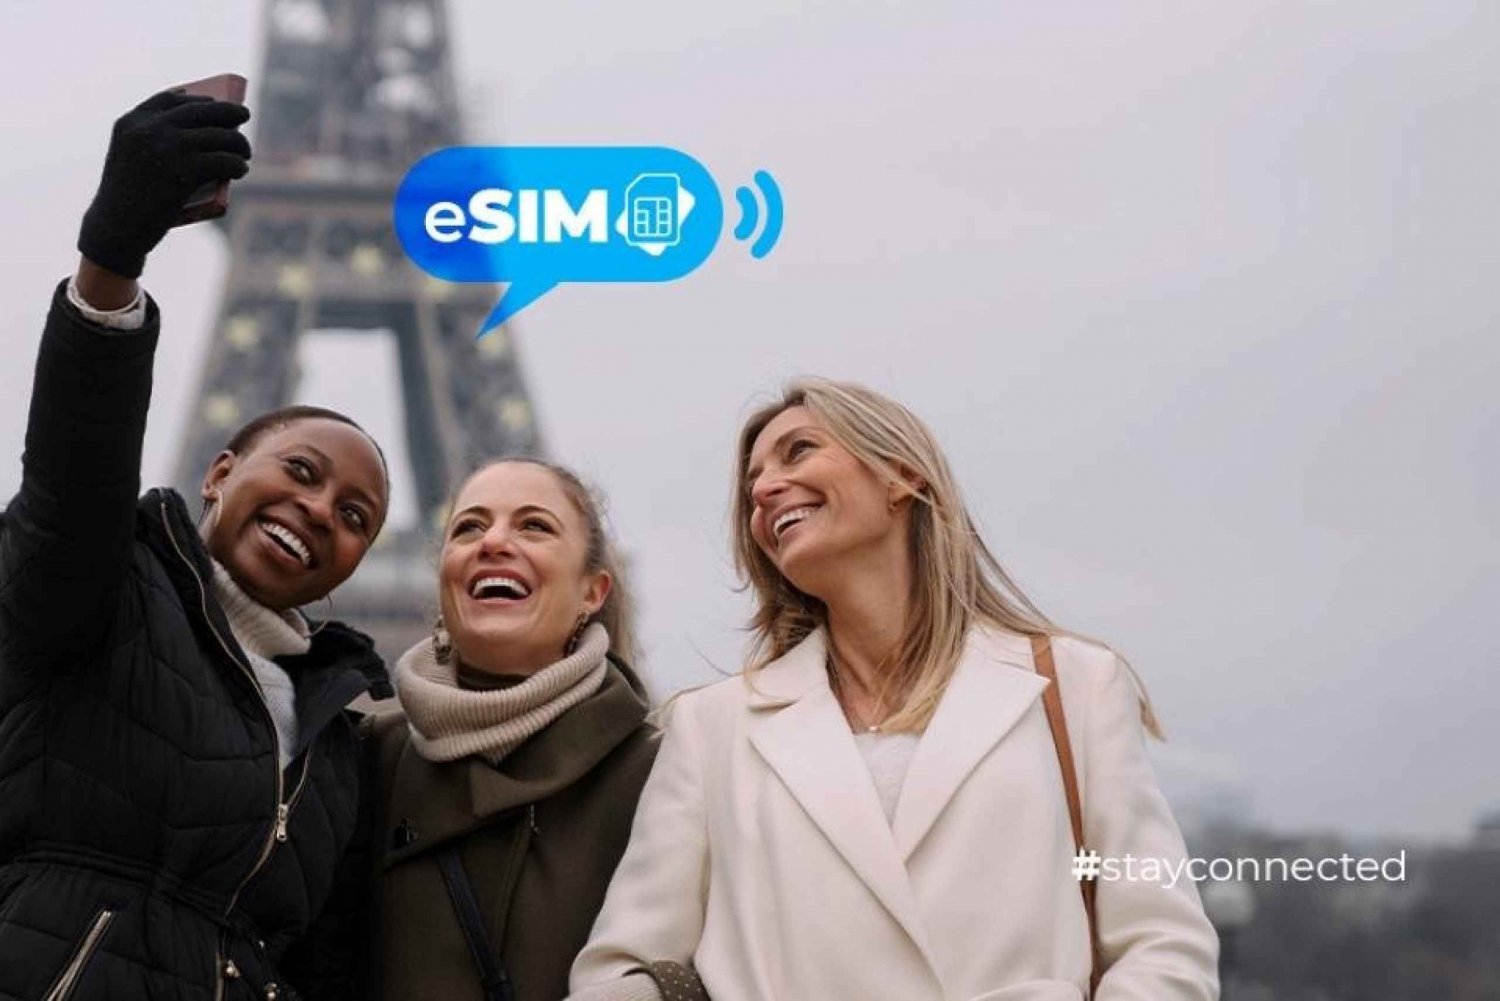 Cannes y Francia: Internet ilimitado en la UE con datos móviles eSIM